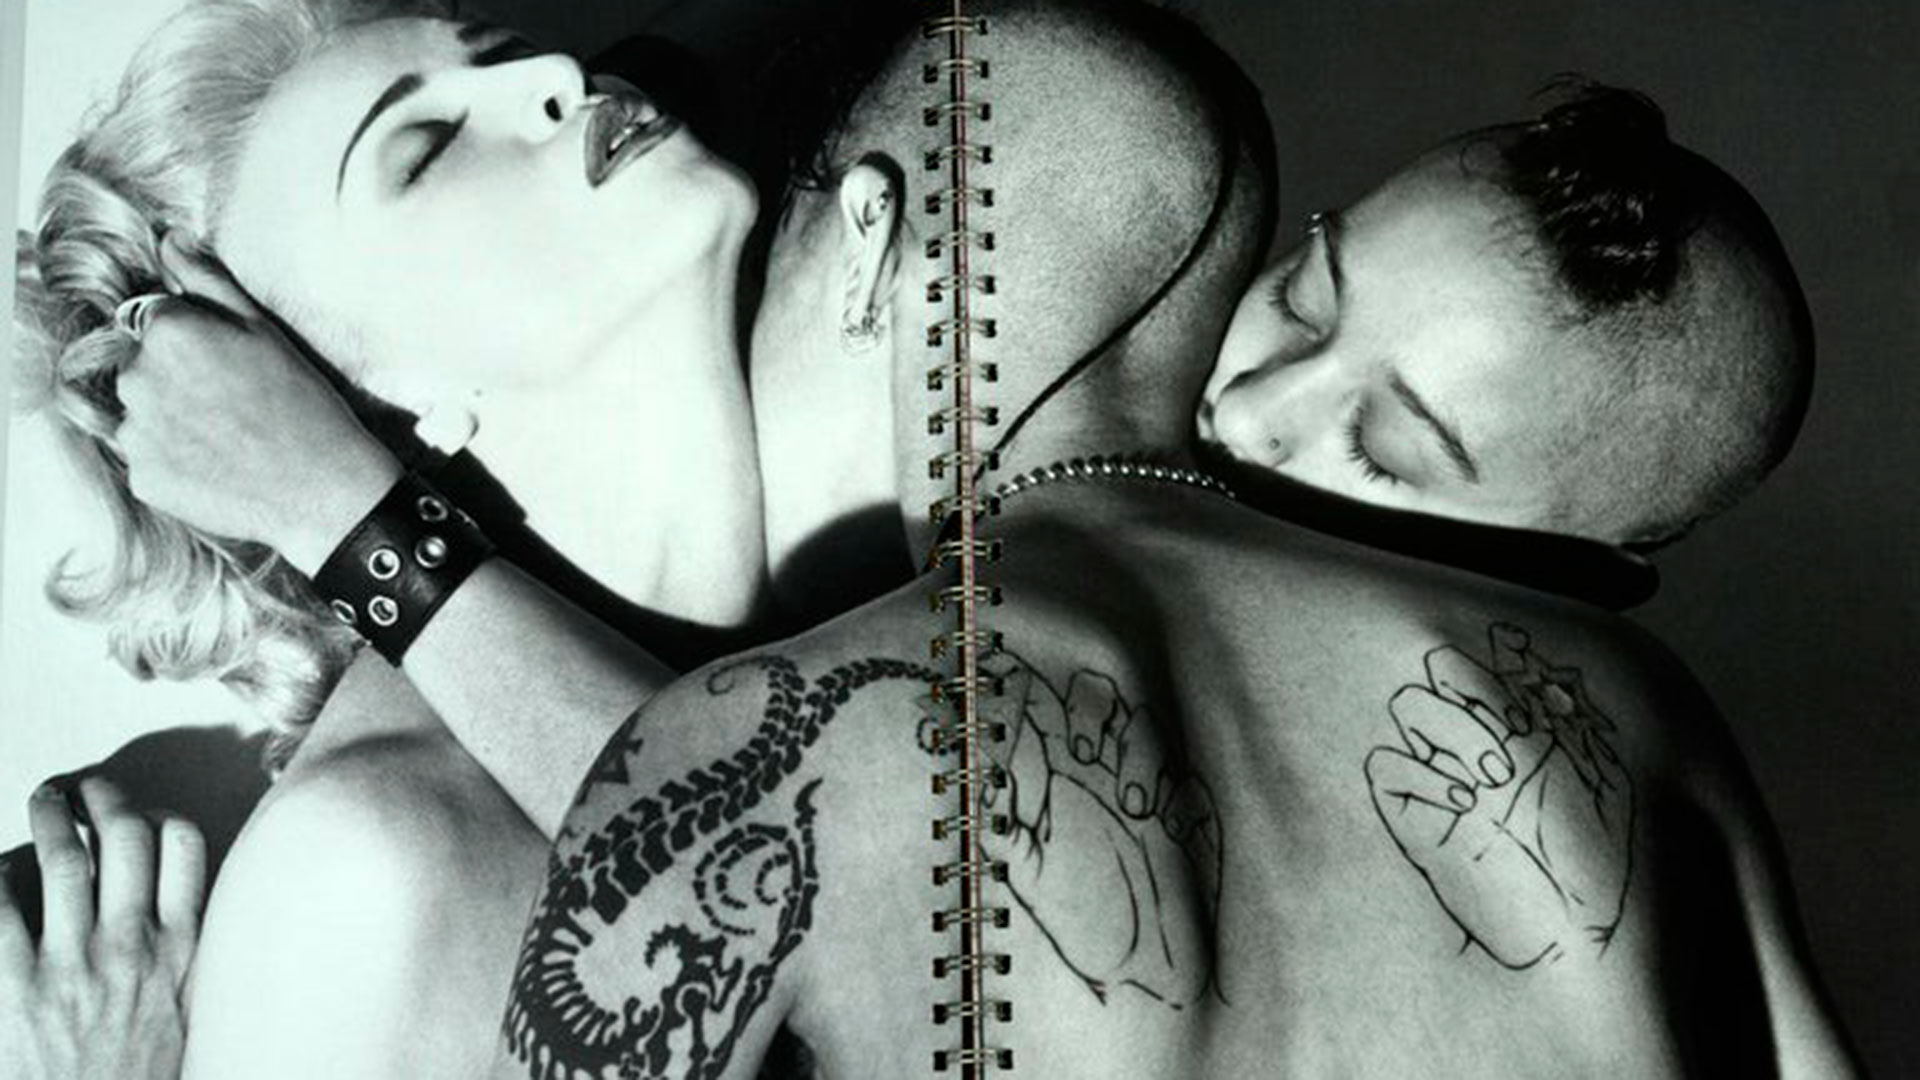 Subastan las fotografías del icónico libro “Sex” de Madonna, un catálogo de fantasías sexuales